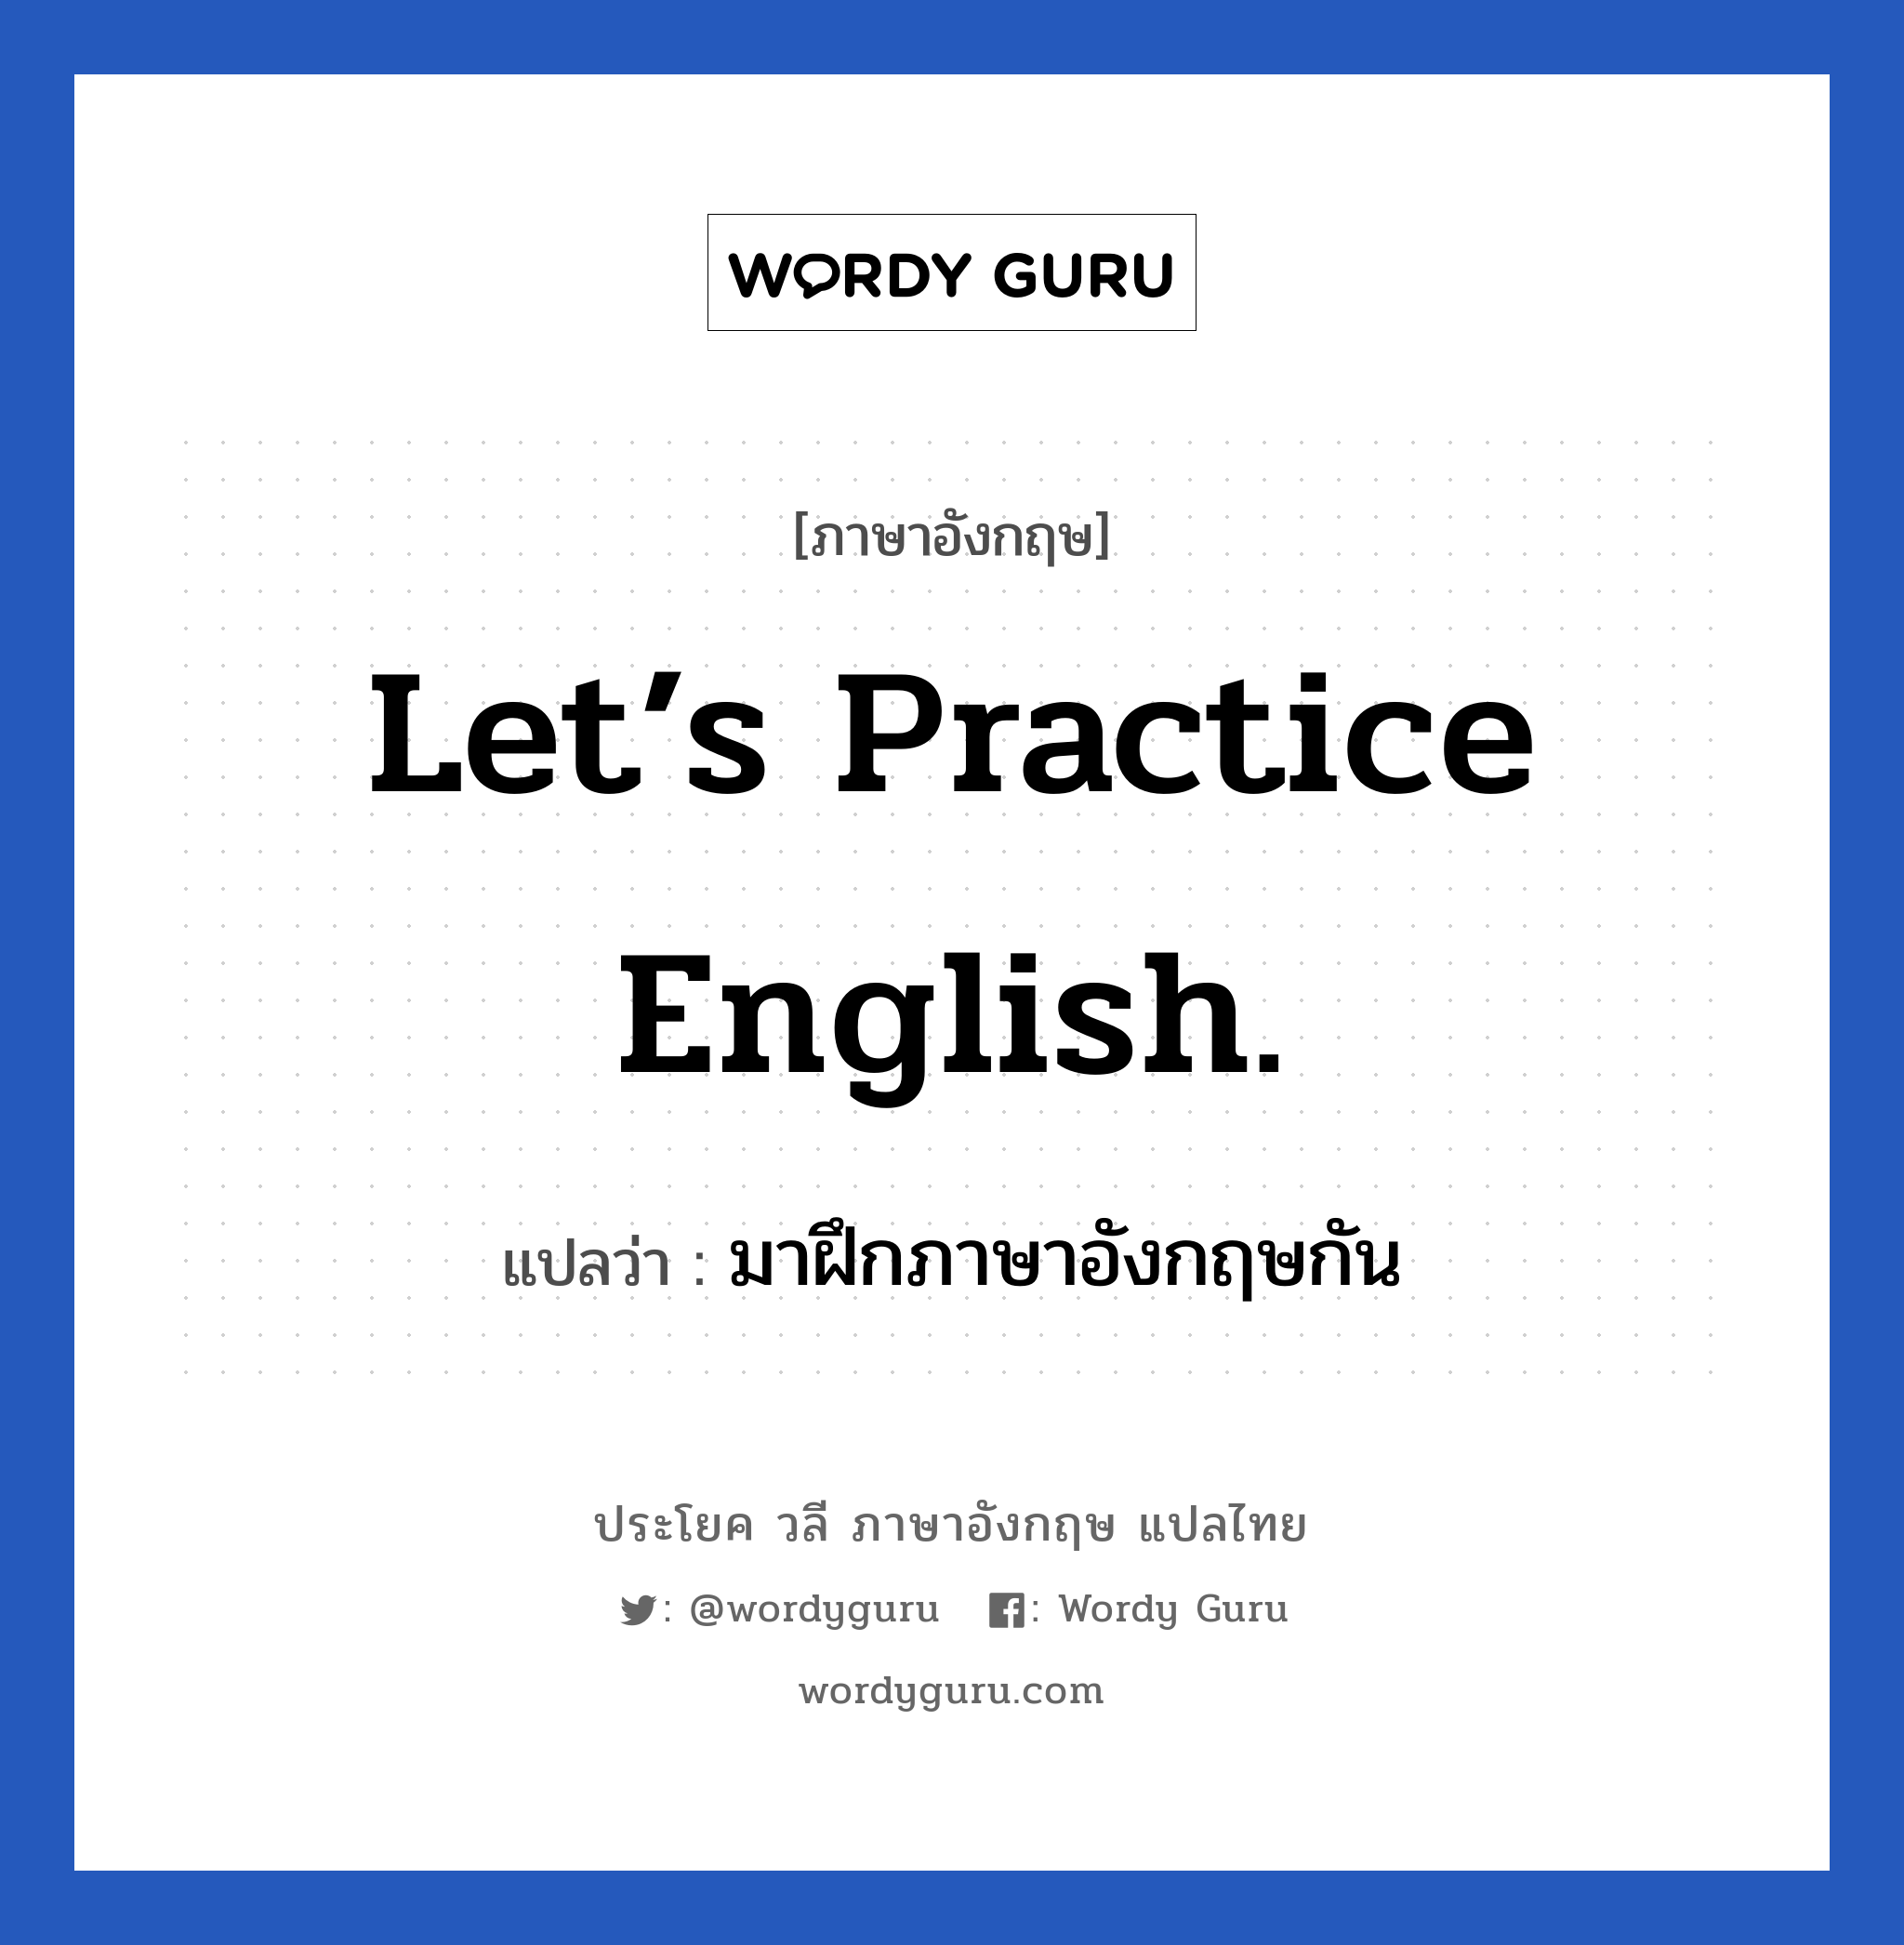 มาฝึกภาษาอังกฤษกัน ภาษาอังกฤษ?, วลีภาษาอังกฤษ มาฝึกภาษาอังกฤษกัน แปลว่า Let’s practice English.